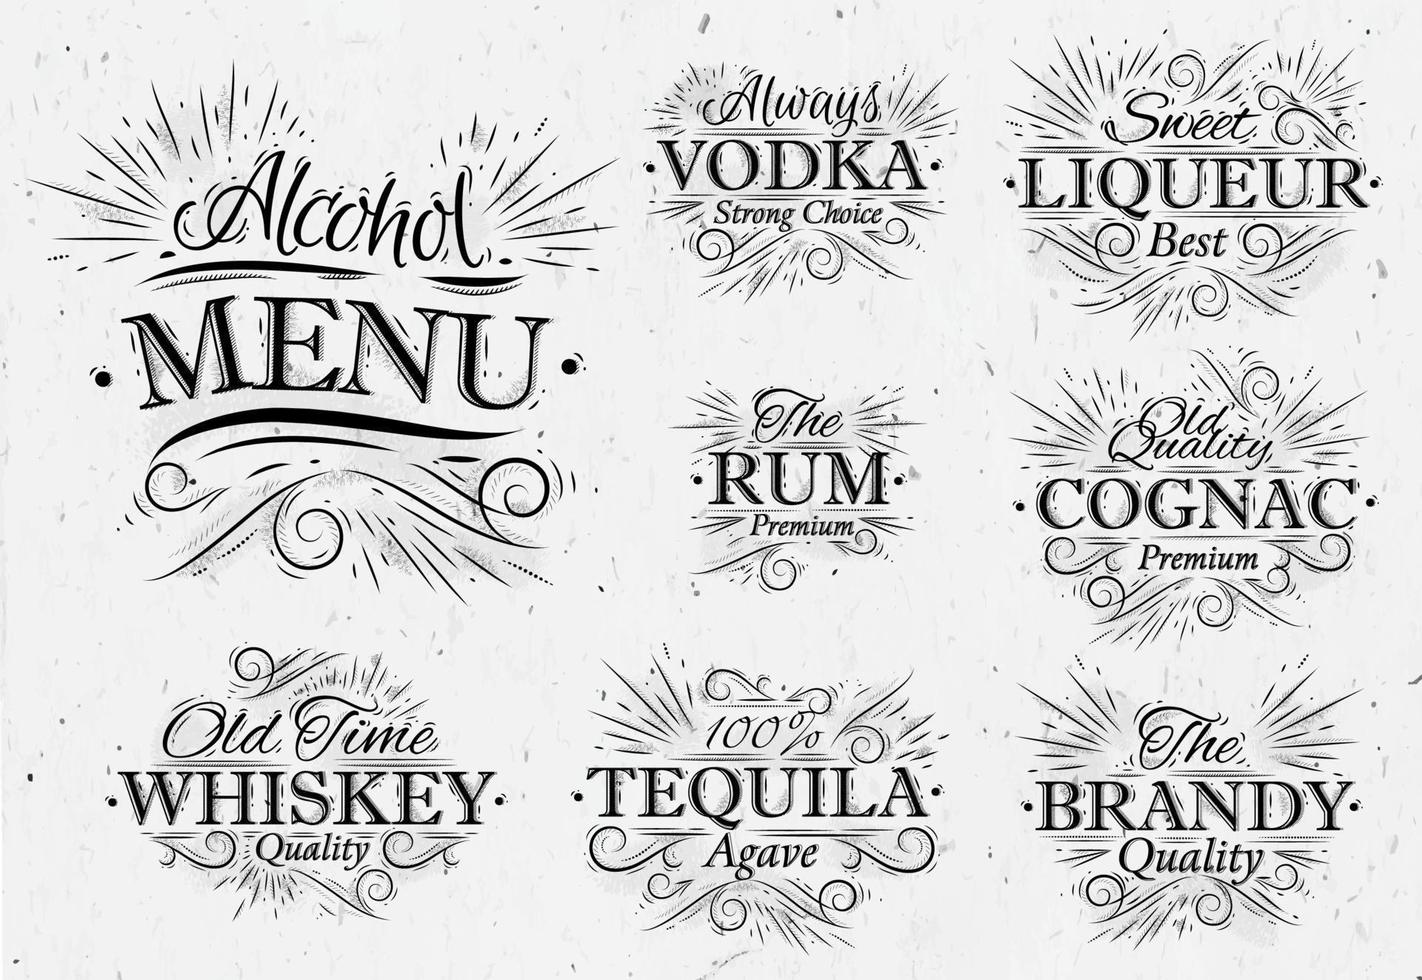 establecer menú de bebidas alcohólicas con nombres de letras en estilo retro vodka, licor, ron, coñac, brandy, tequila, whisky en estilo vintage vector